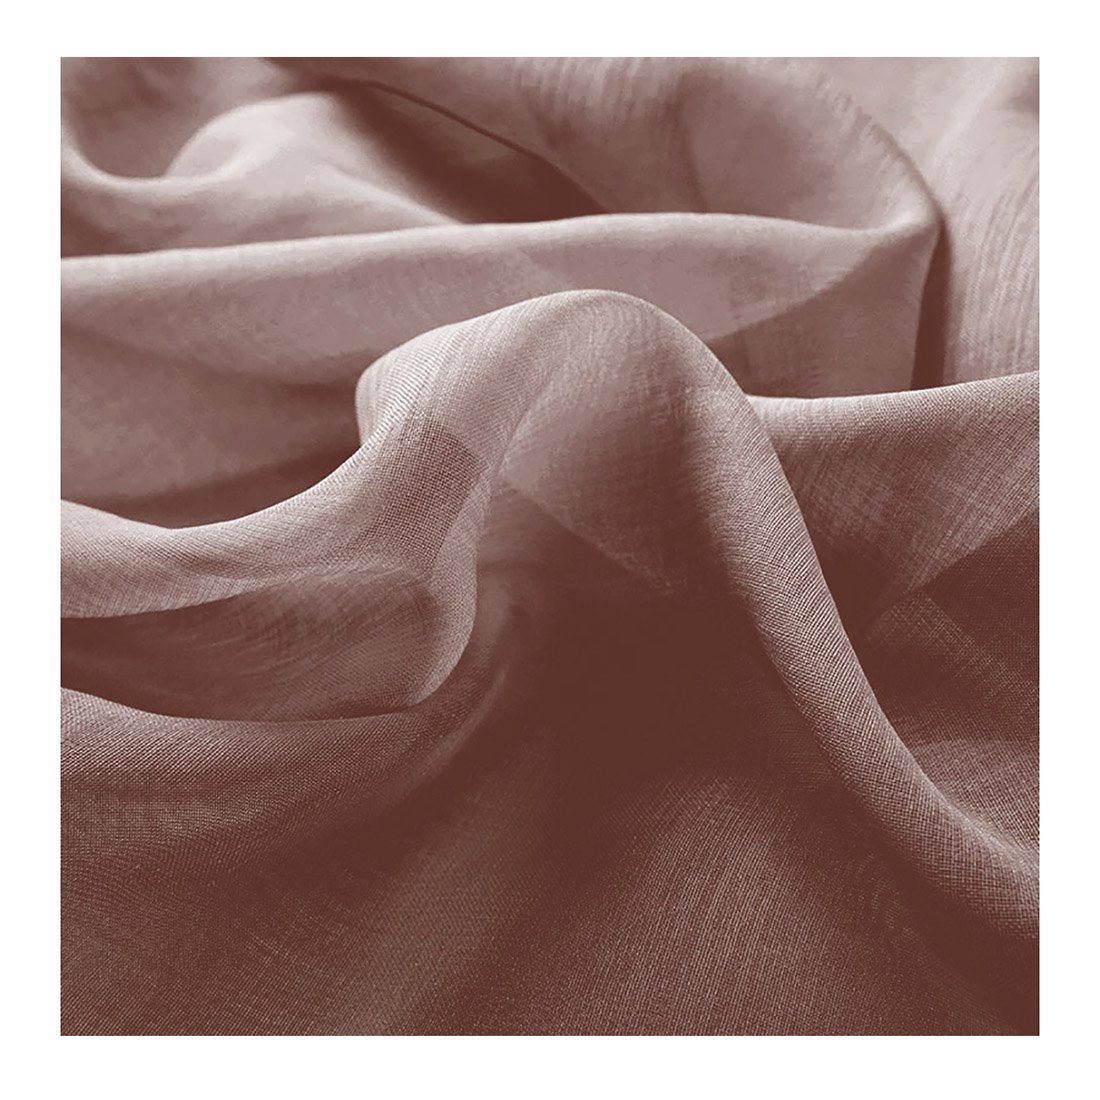 Acomoda Textil – Cortina Translucida para Ventanas 140x265 cm. (Berenjena)  - Conforama